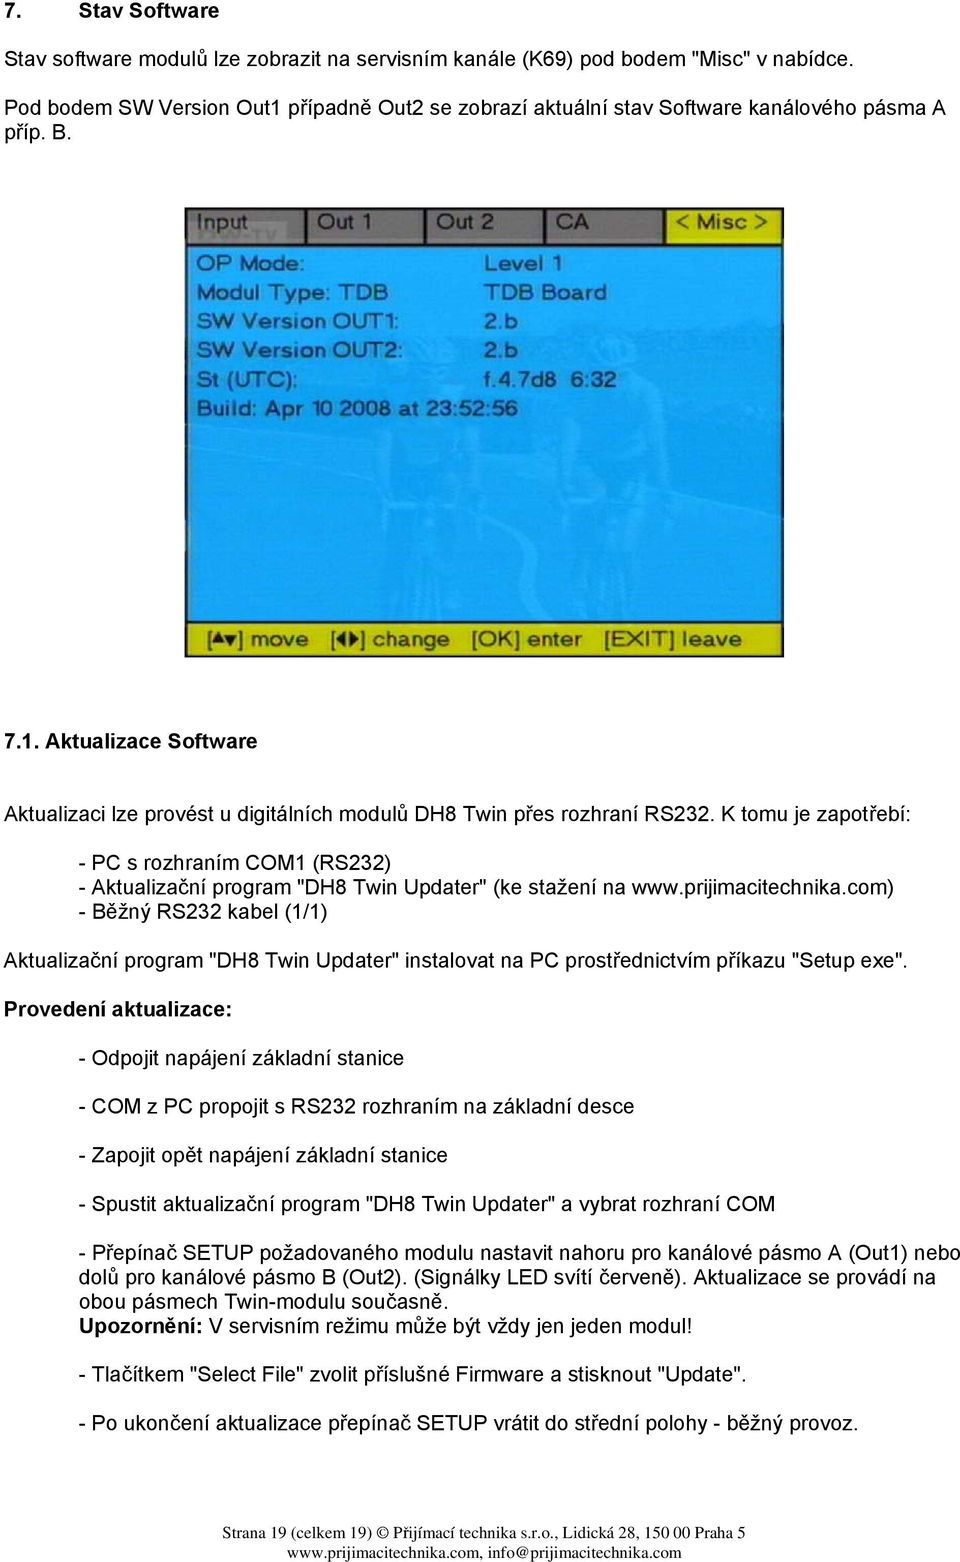 K tomu je zapotřebí: - PC s rozhraním COM1 (RS232) - Aktualizační program "DH8 Twin Updater" (ke stažení na www.prijimacitechnika.